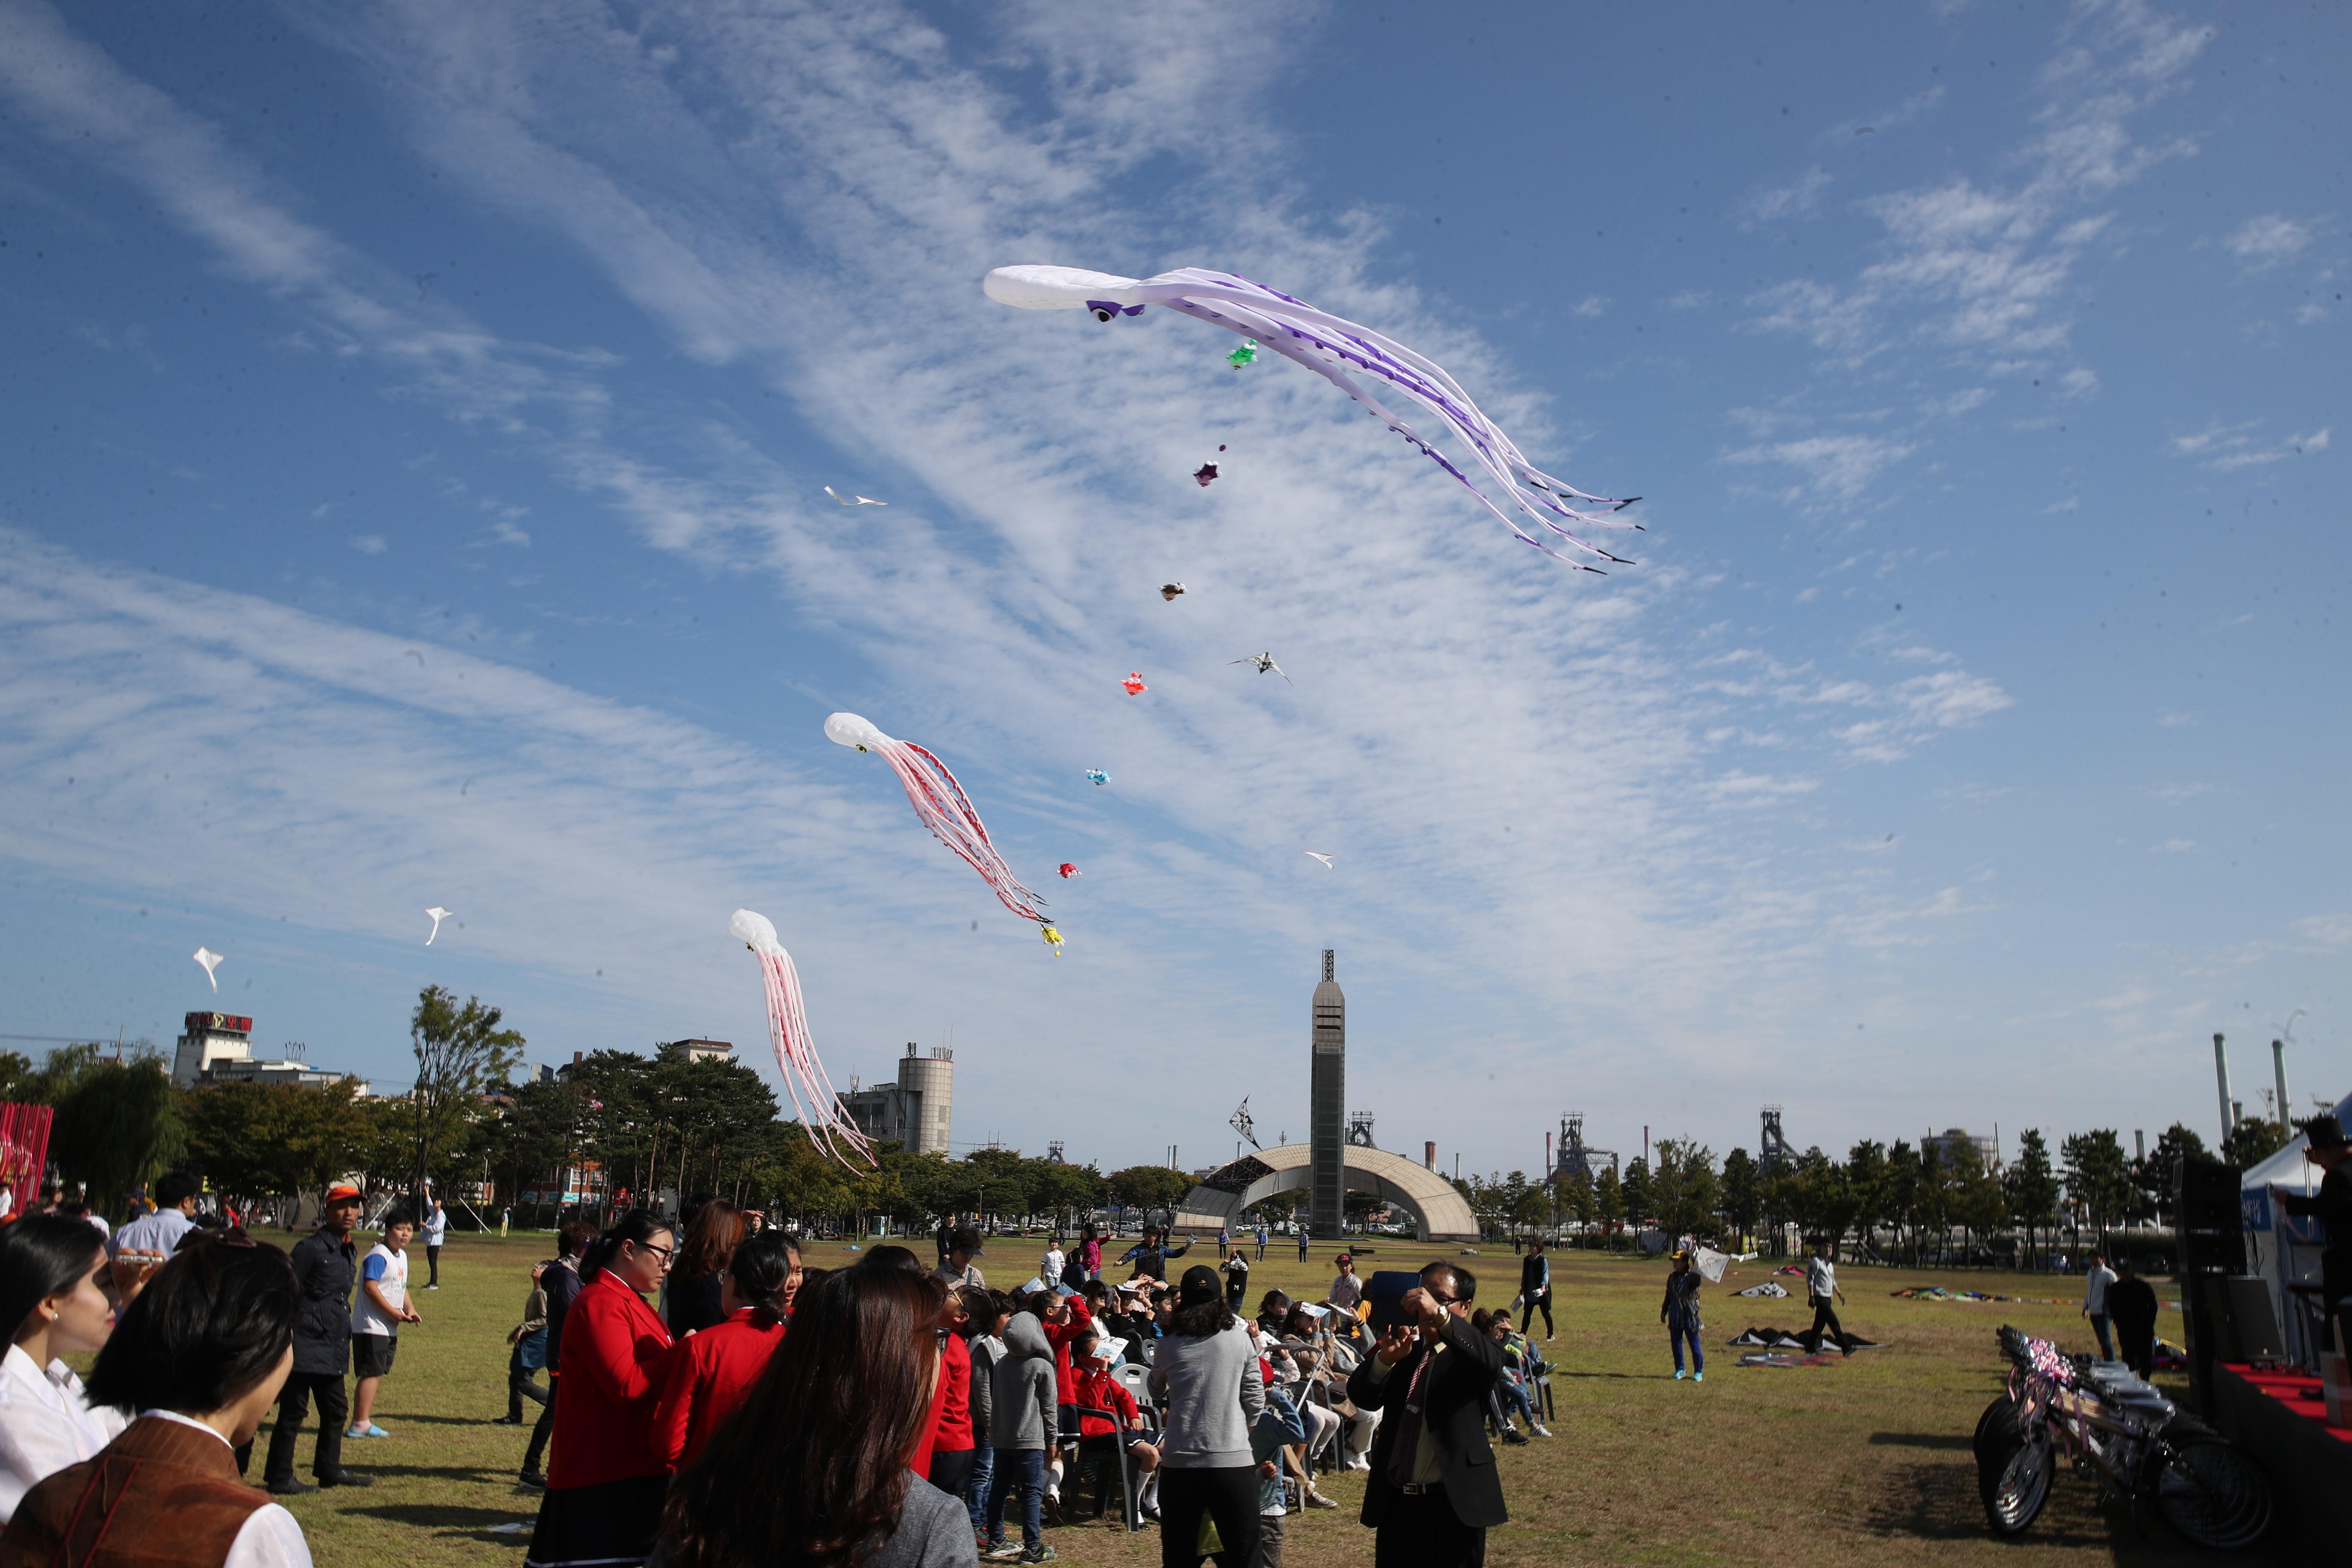 Pohang Kite Festival